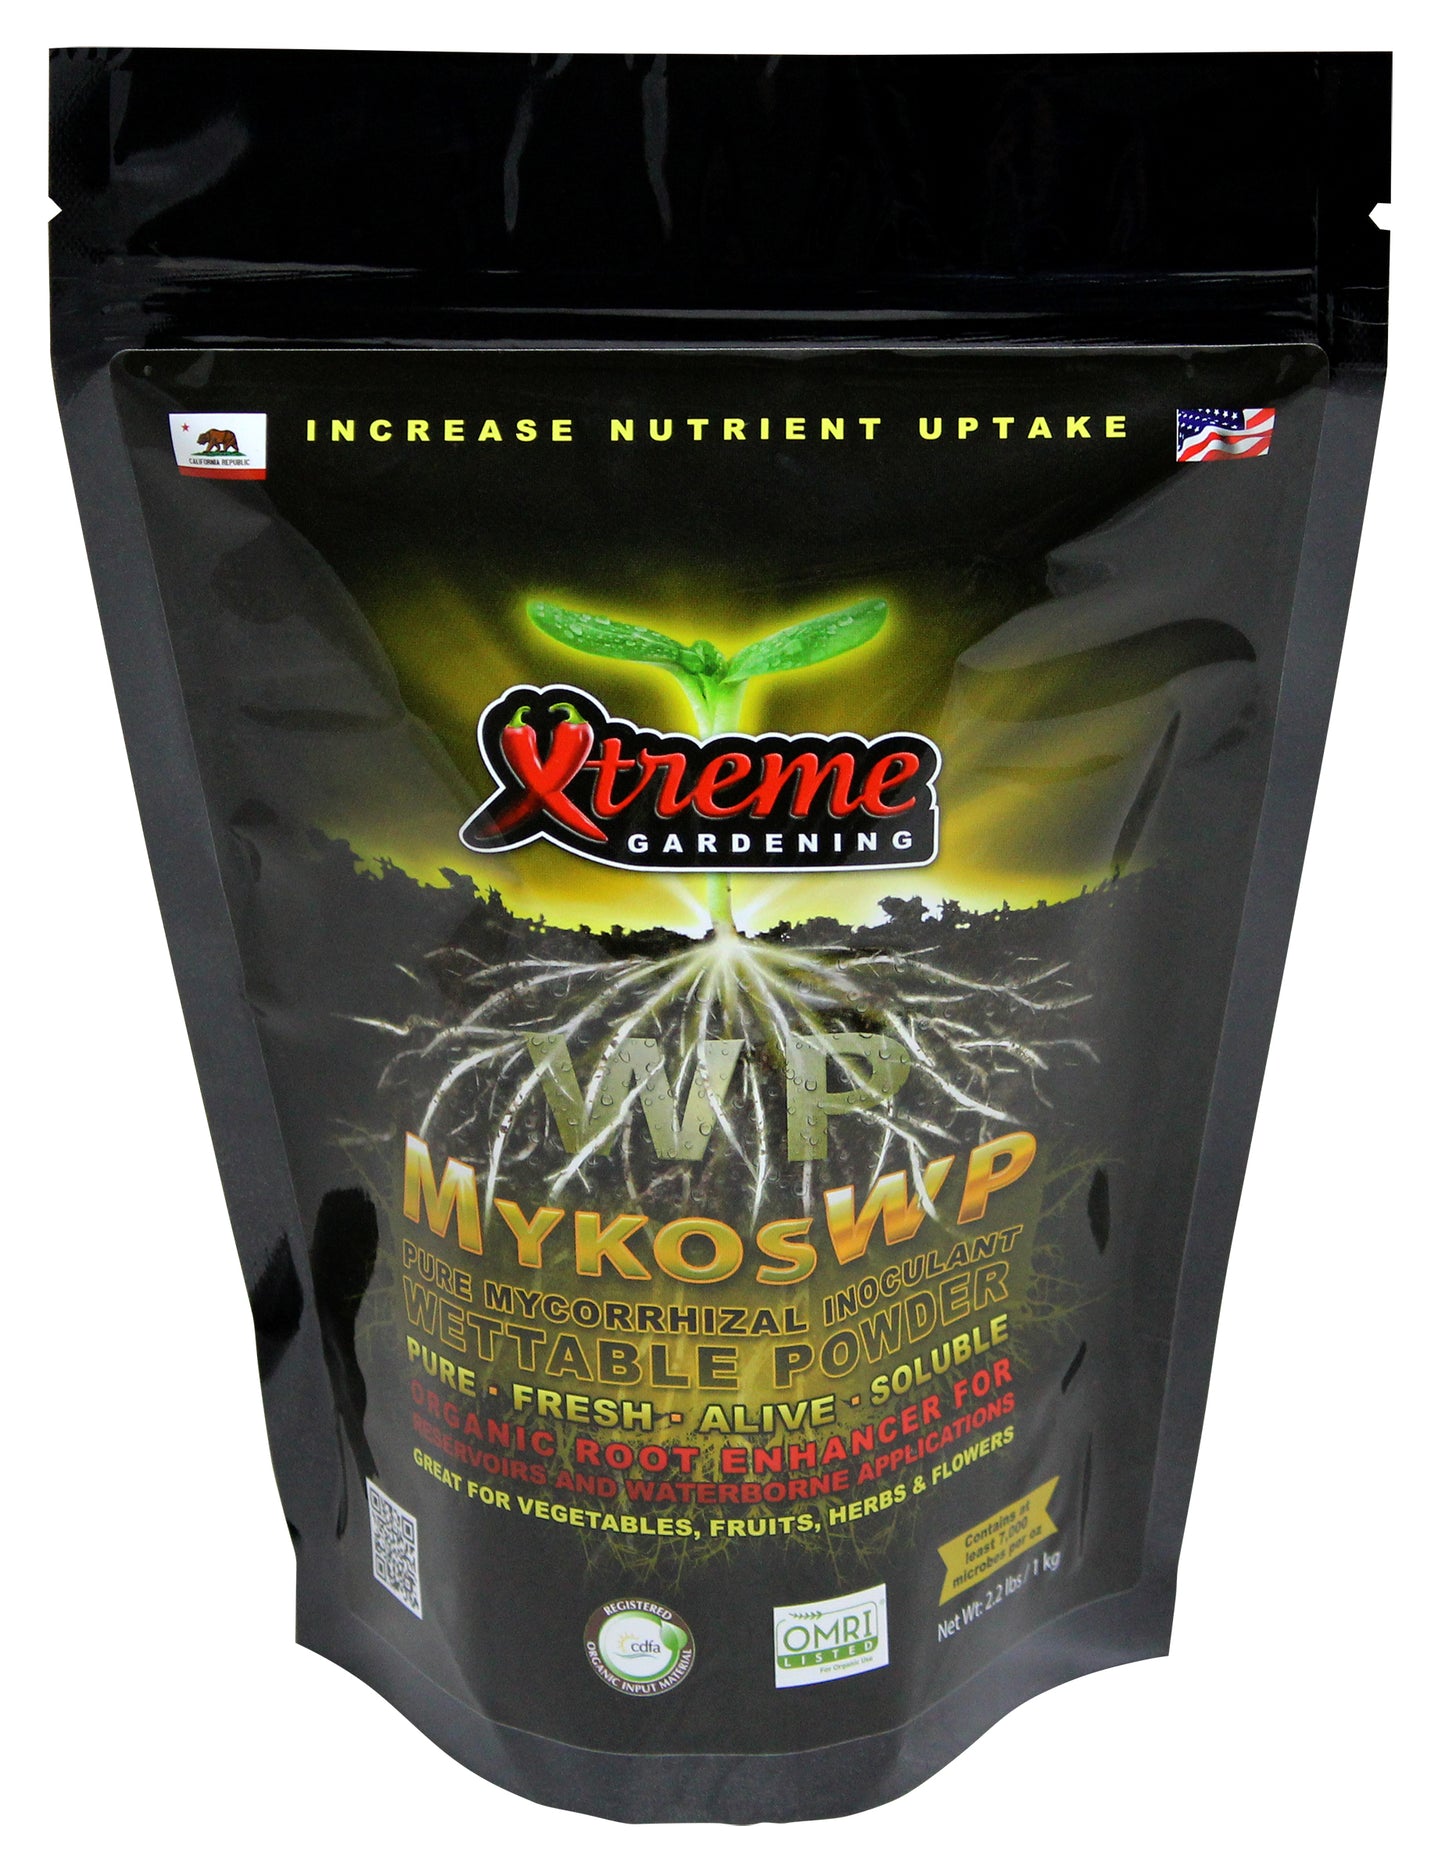 Xtreme Gardening Mykos Wettable Powder